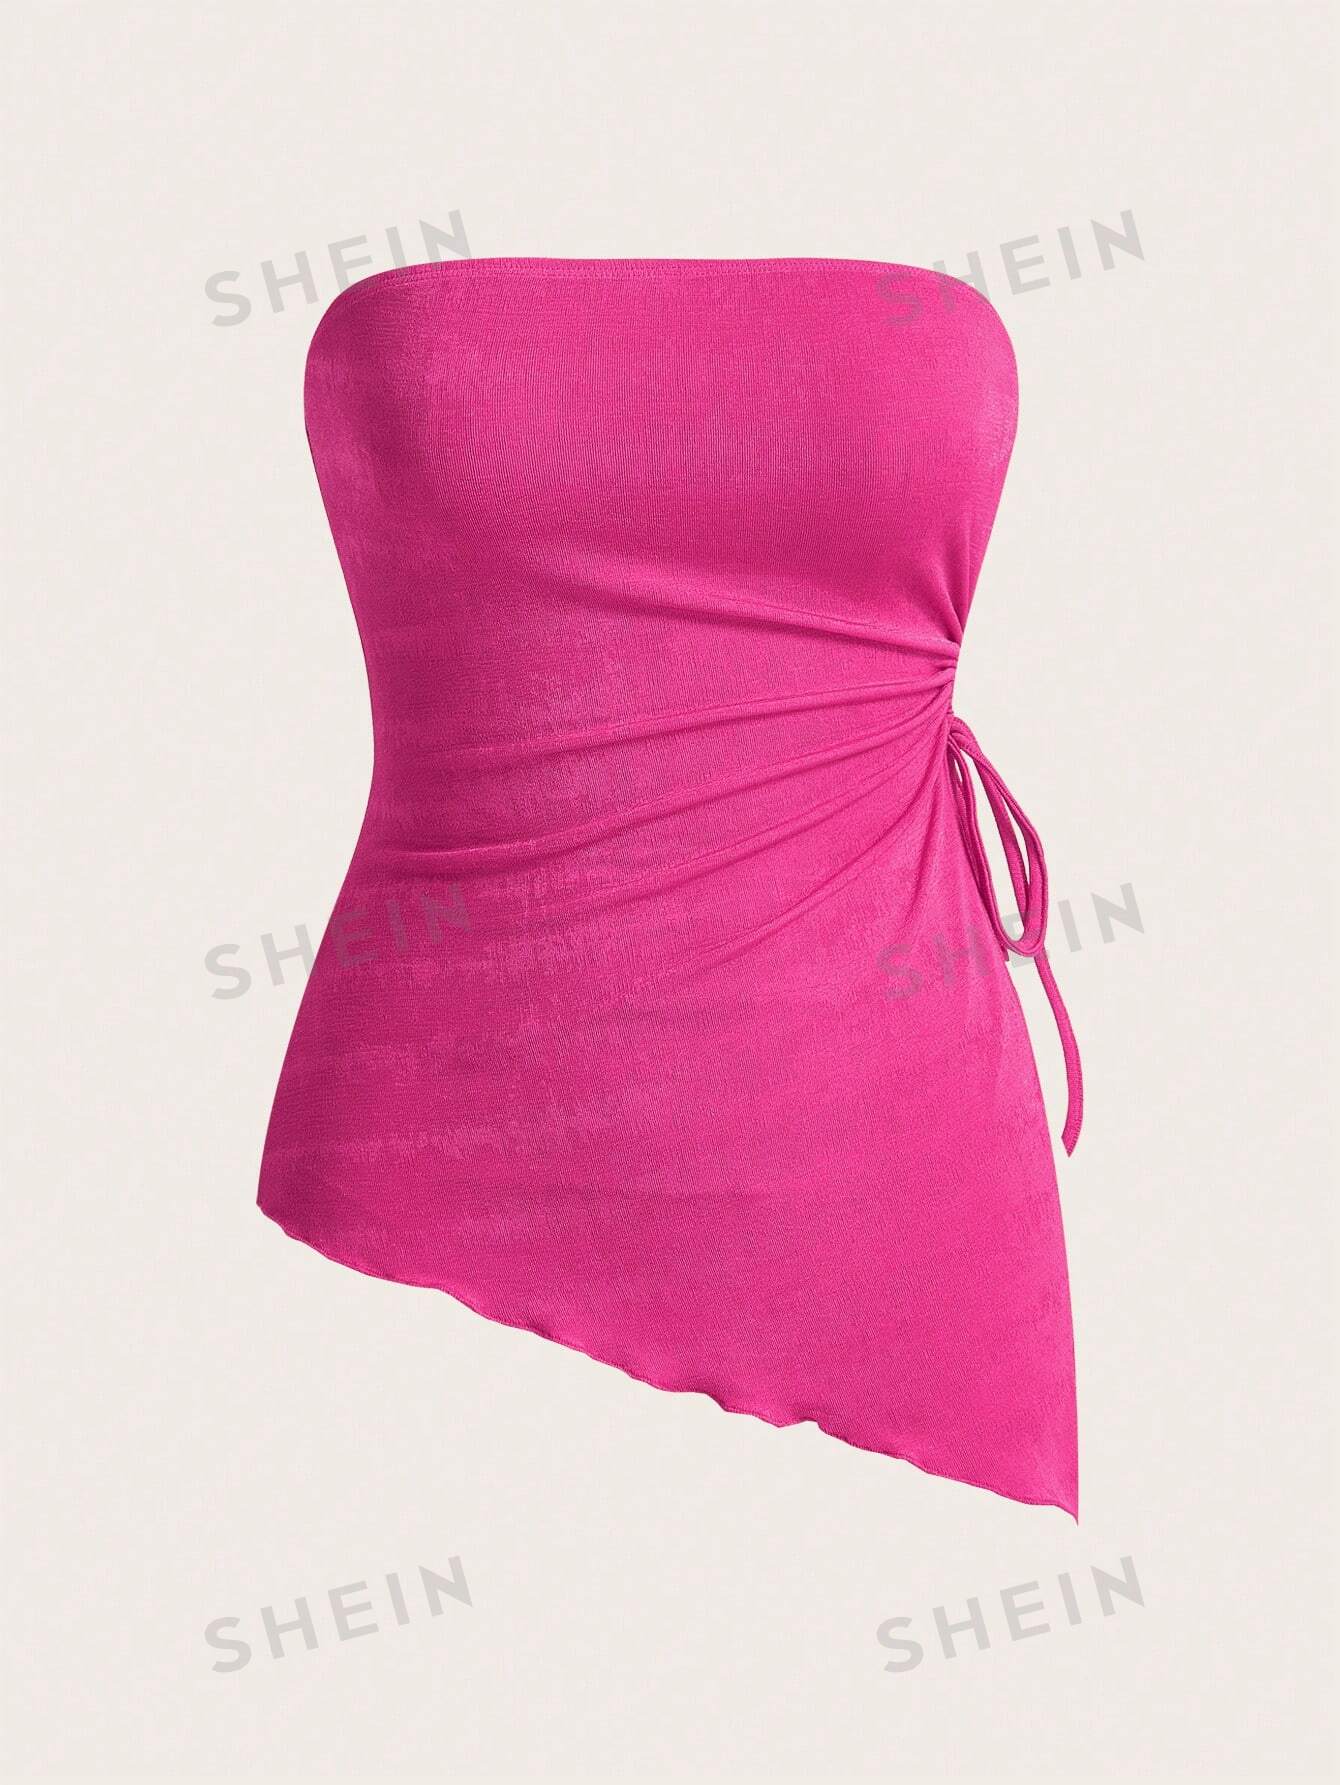 shein mod вязаный женский асимметричный топ бандо с завязками по бокам и неровным подолом розовый SHEIN MOD Вязаный женский асимметричный топ-бандо с завязками по бокам и неровным подолом, ярко-розовый